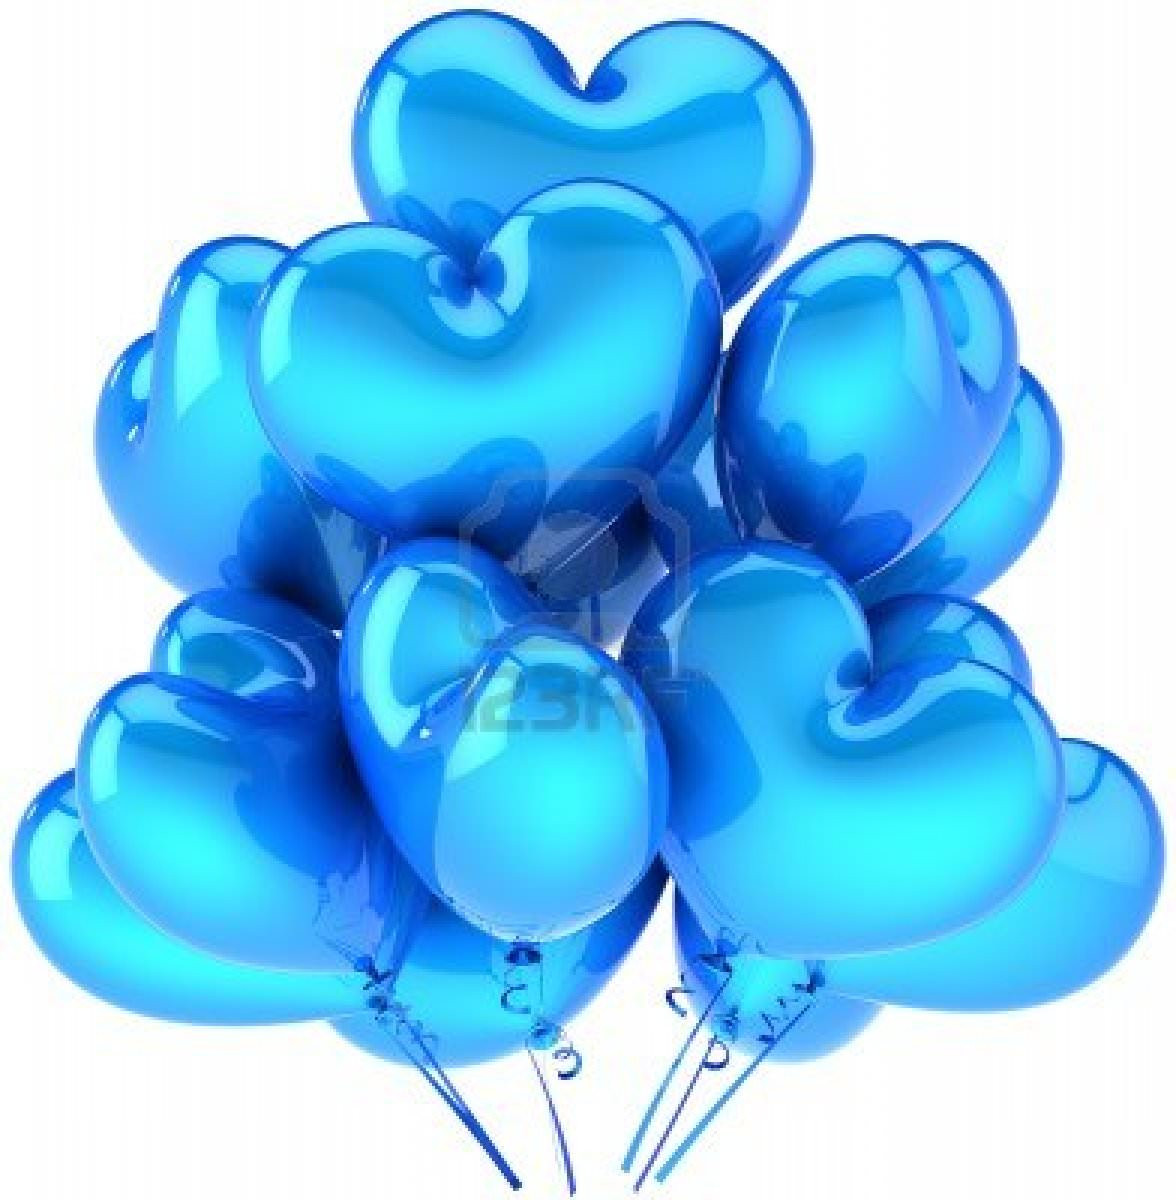 9546204-ciano-blu-a-forma-di-cuore-di-palloncini-di-partito-amore-decorazione-per-una-vacanza-romantica-conc_mini.jpg